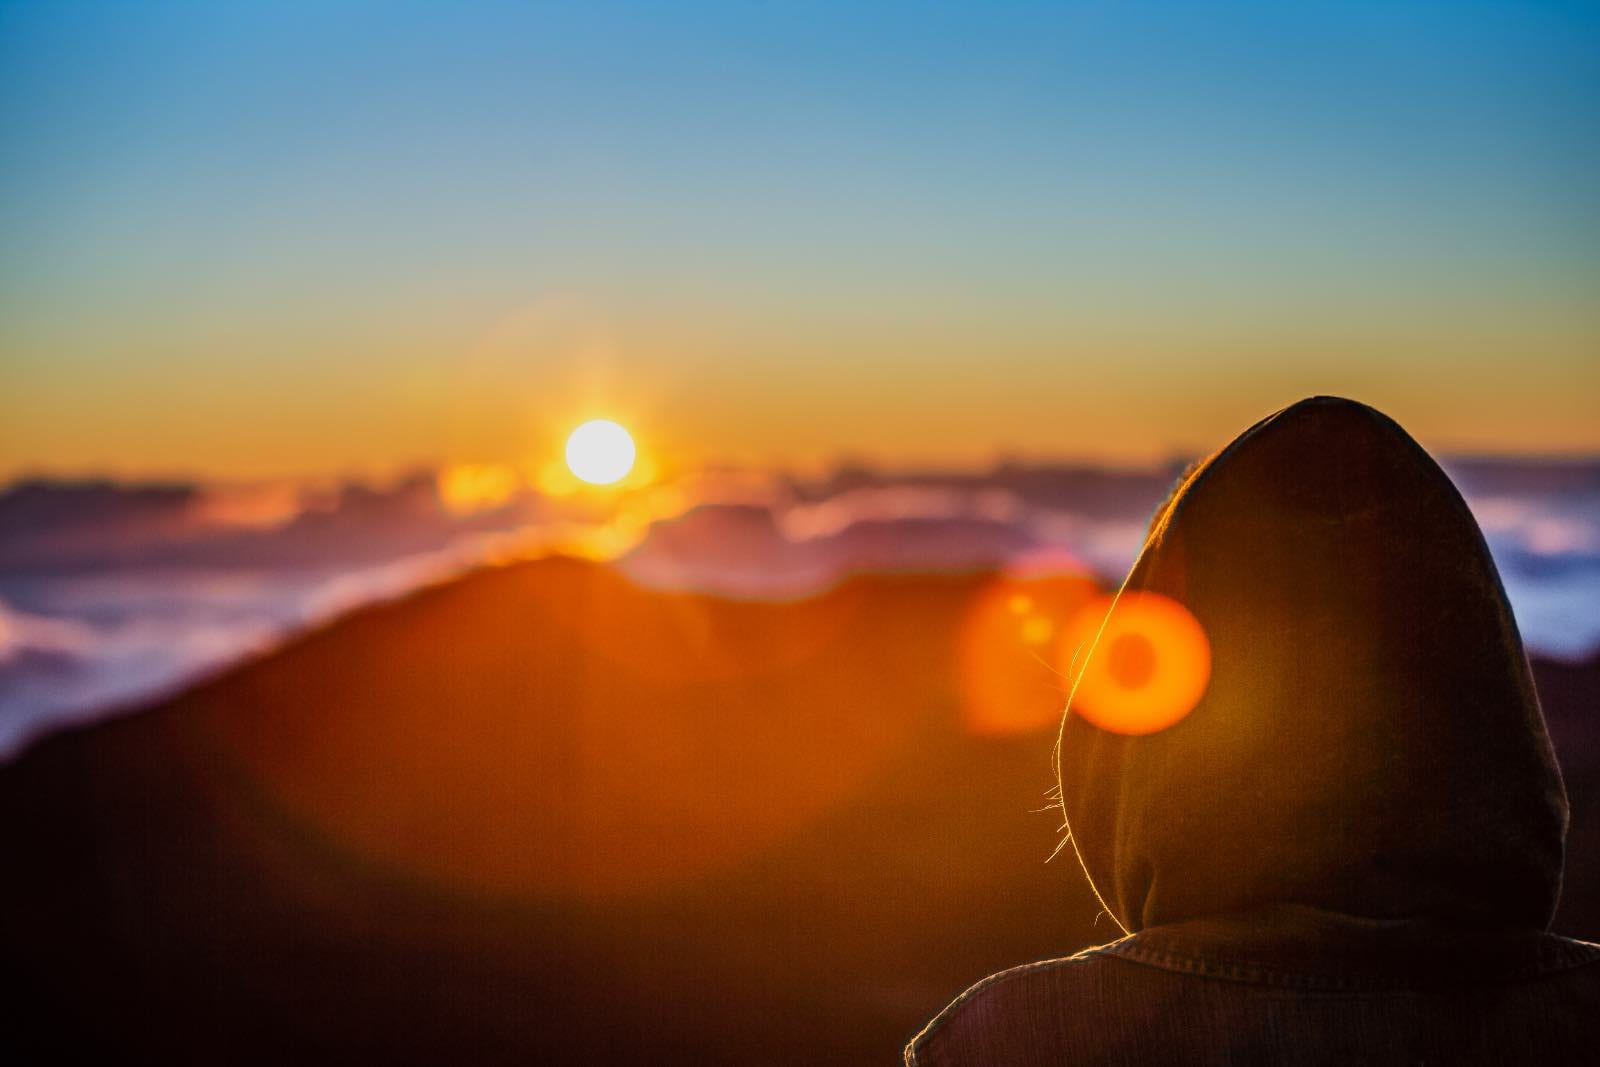 Sunrise atop Haleakala volcano on Maui